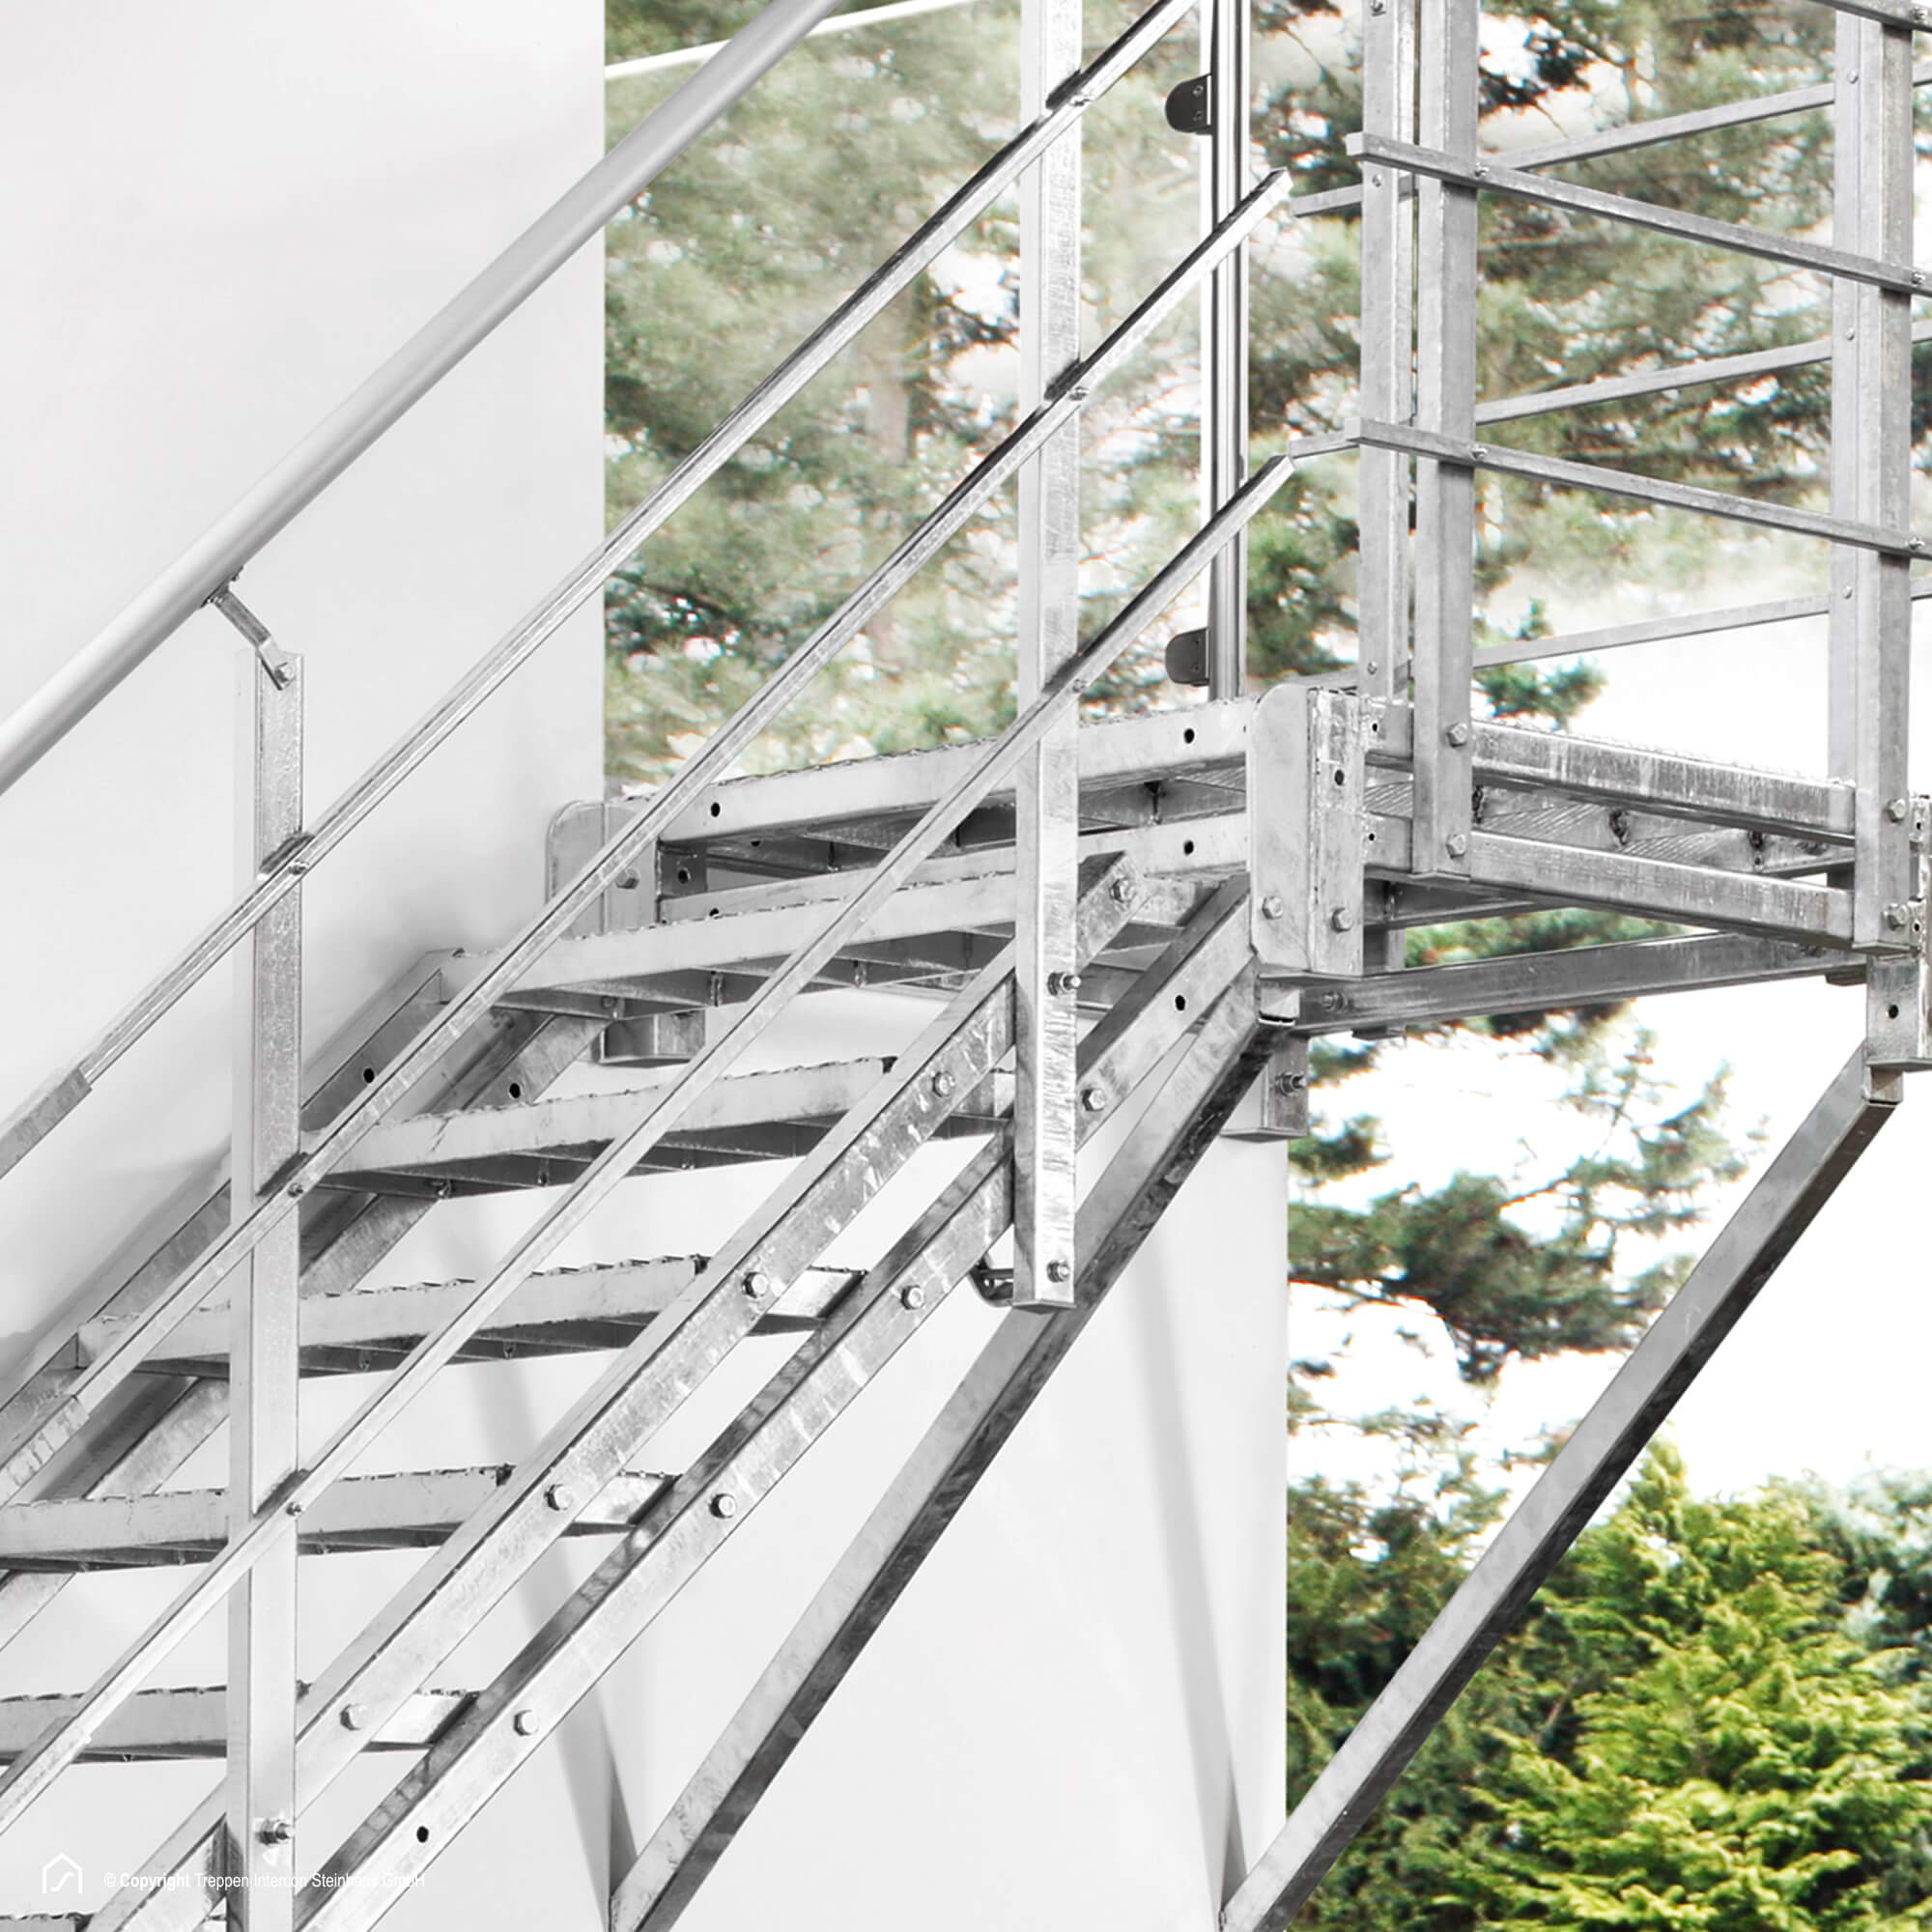 Außentreppe 14 Stufen 90 cm Laufbreite einseitiges Geländer rechts feuerverzinkte Stahltreppe mit 900 mm Stufenlänge als montagefertiger Bausatz Anstellhöhe variabel von 233 cm bis 280 cm Gitterroststufe ST1